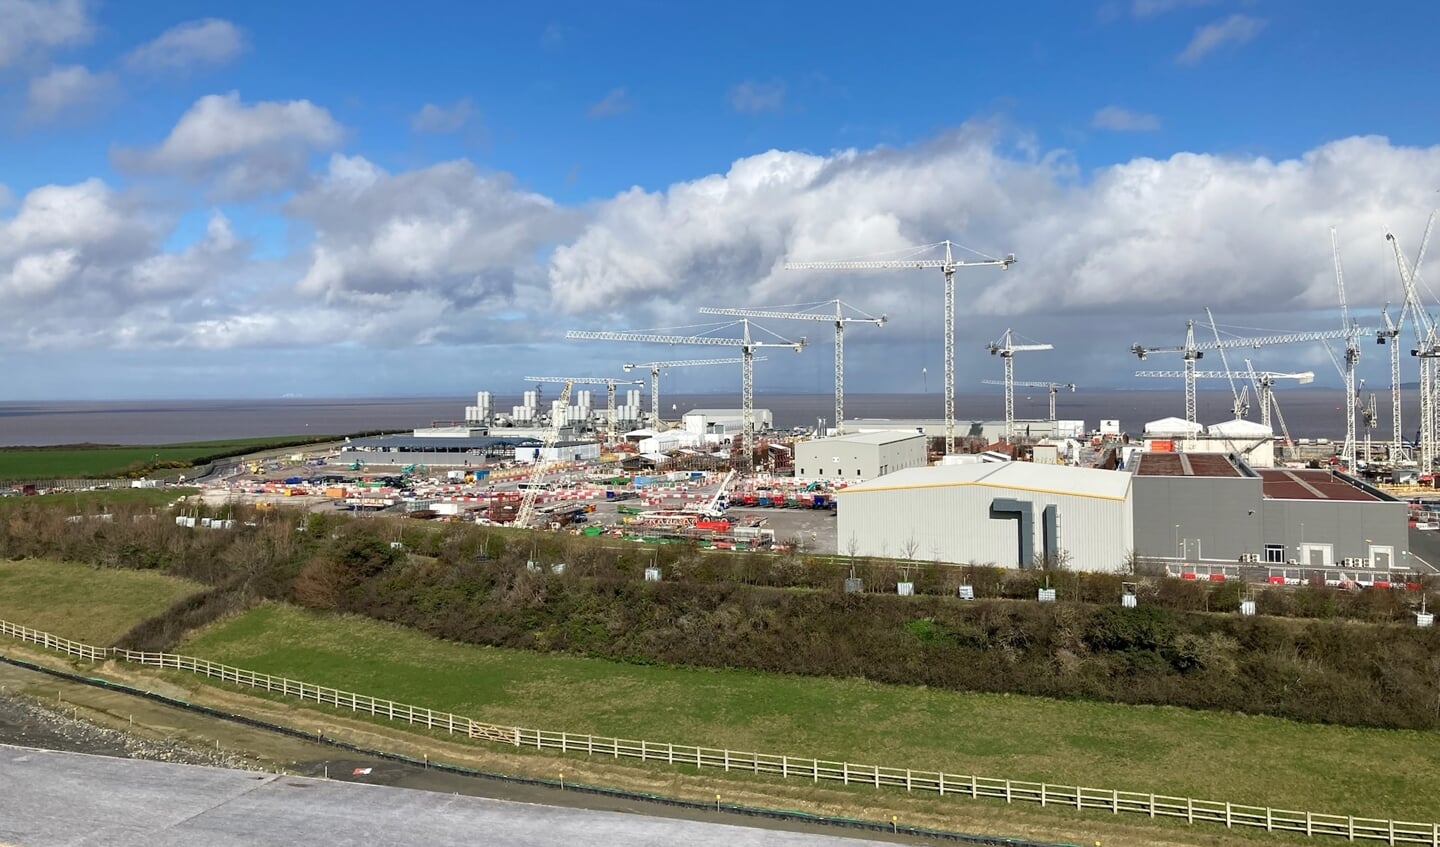 De bouw van deze kerncentrale in Engeland heeft de Borselse burgemeester bezocht.